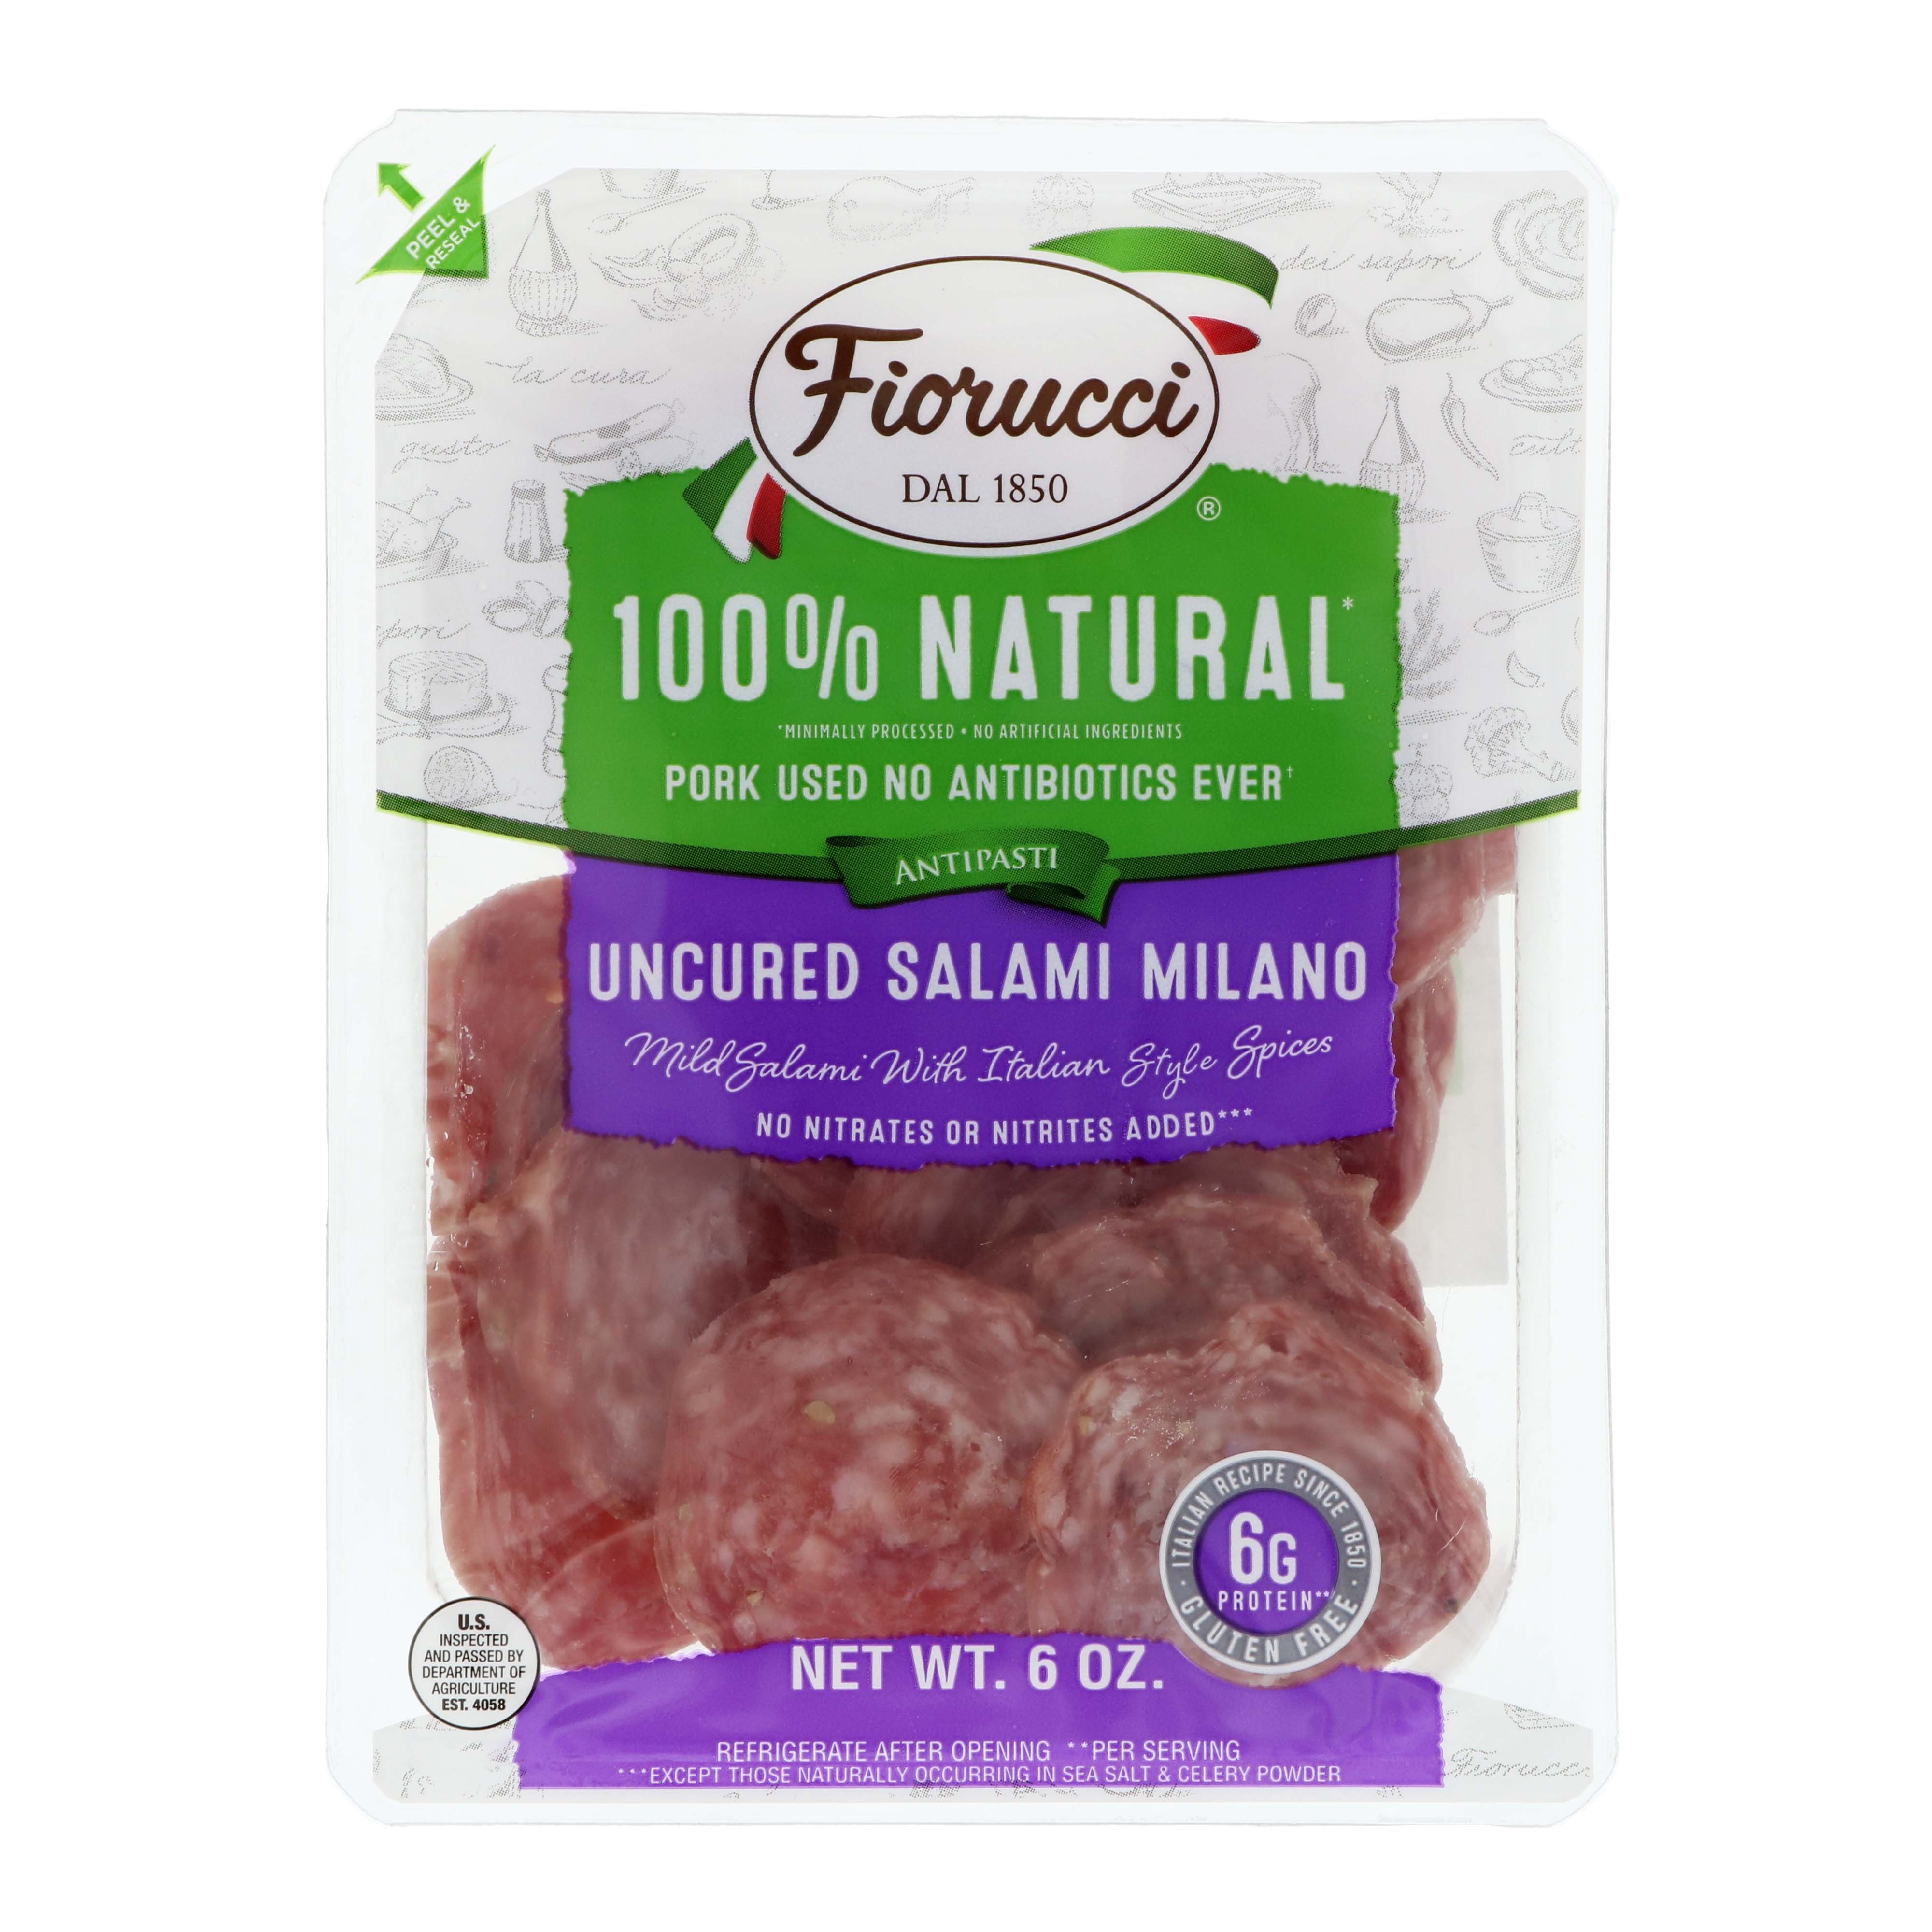 Fiorucci Uncured Salami Milano - Shop Meat at H-E-B